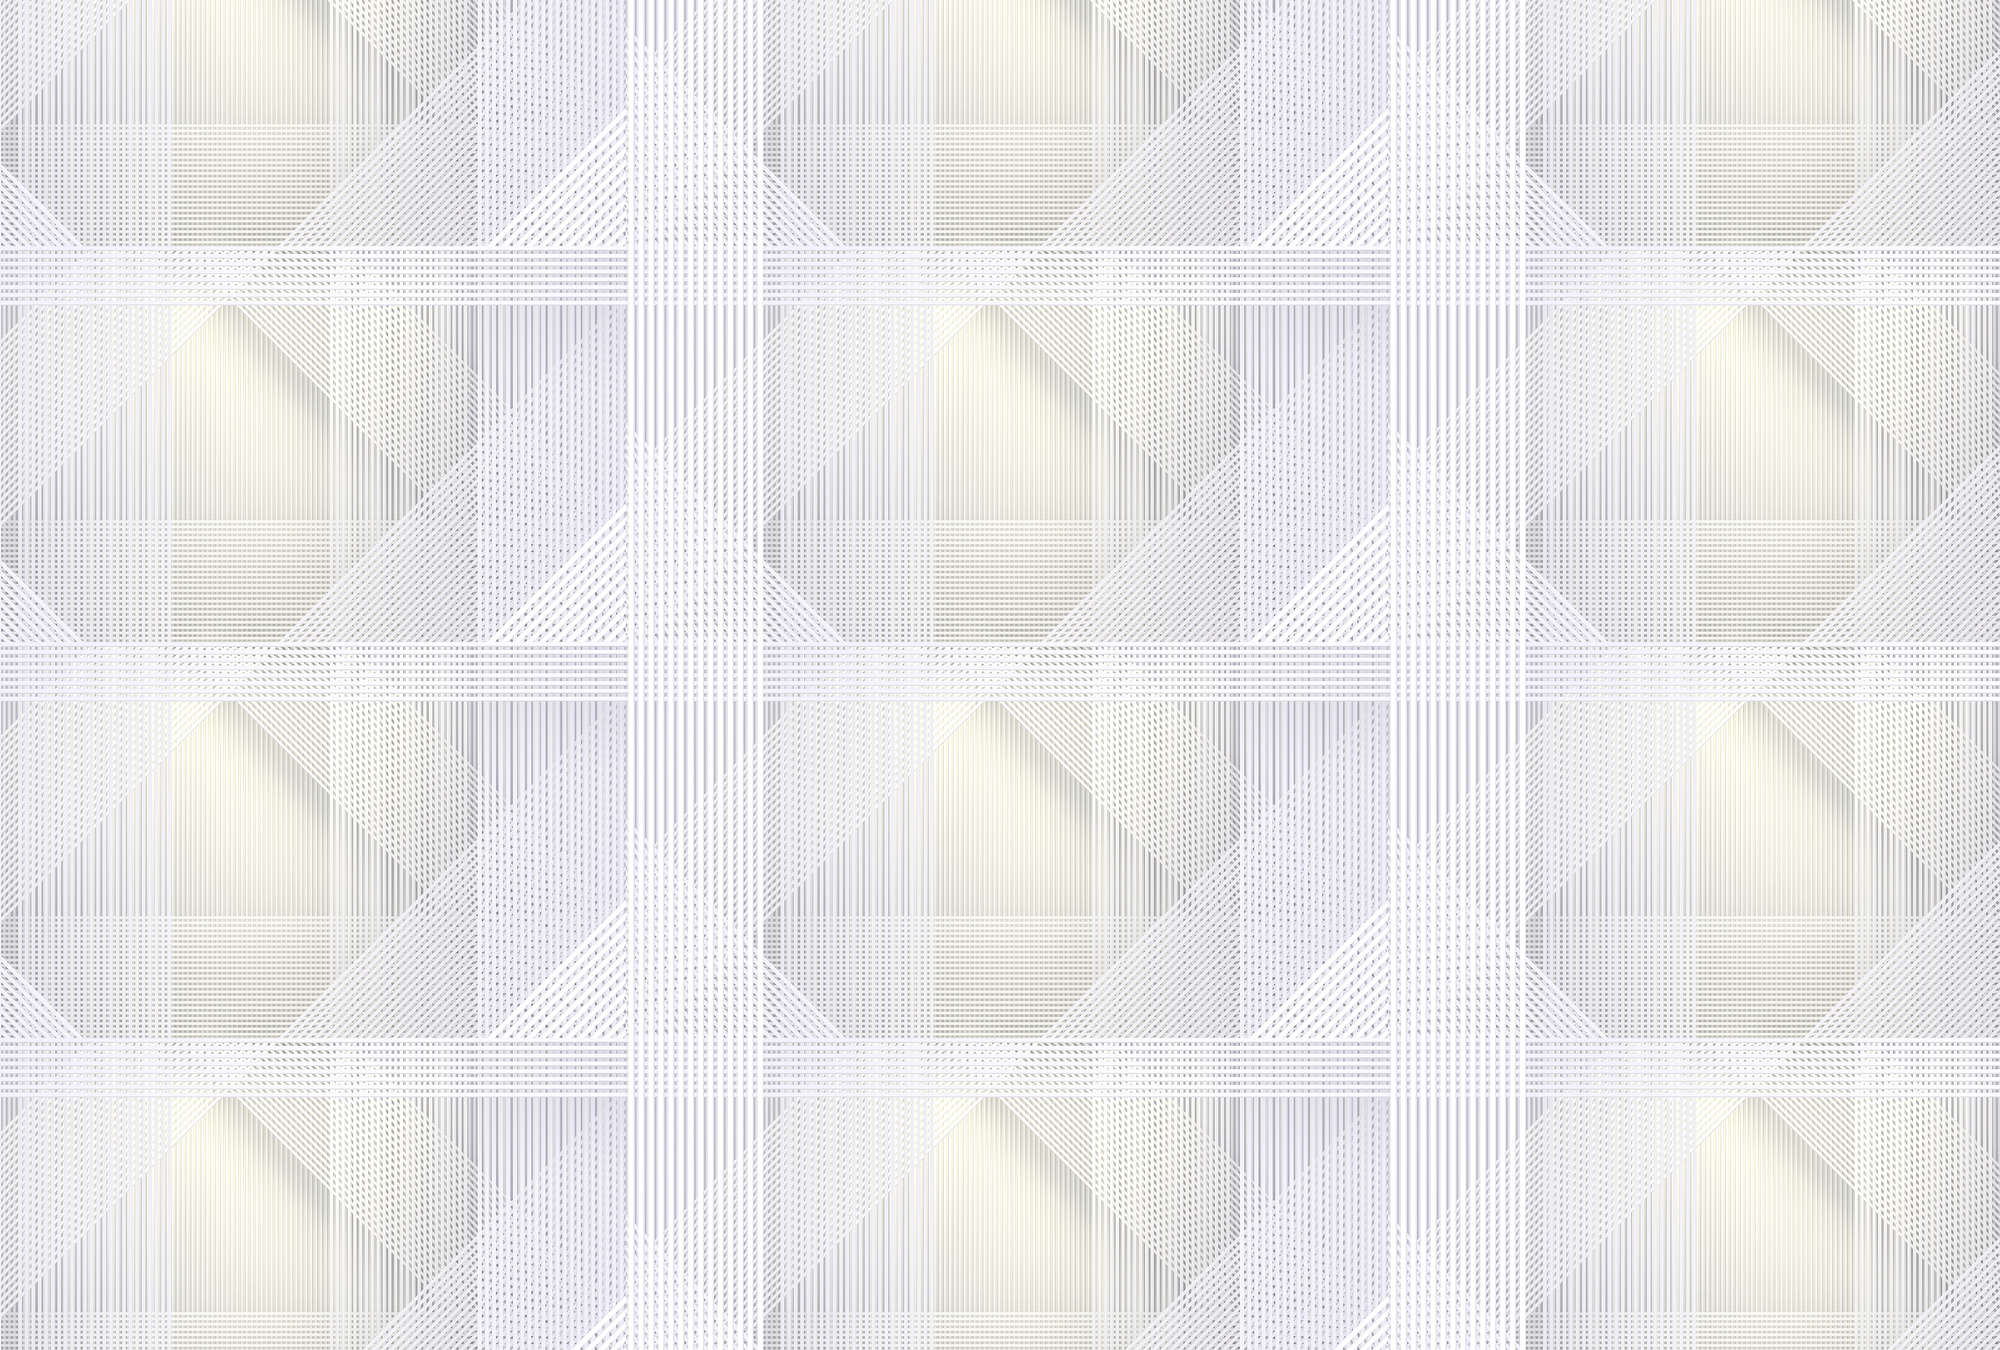             Strings 1 - Fototapete geometrisches Streifen Muster – Gelb, Grau | Struktur Vlies
        